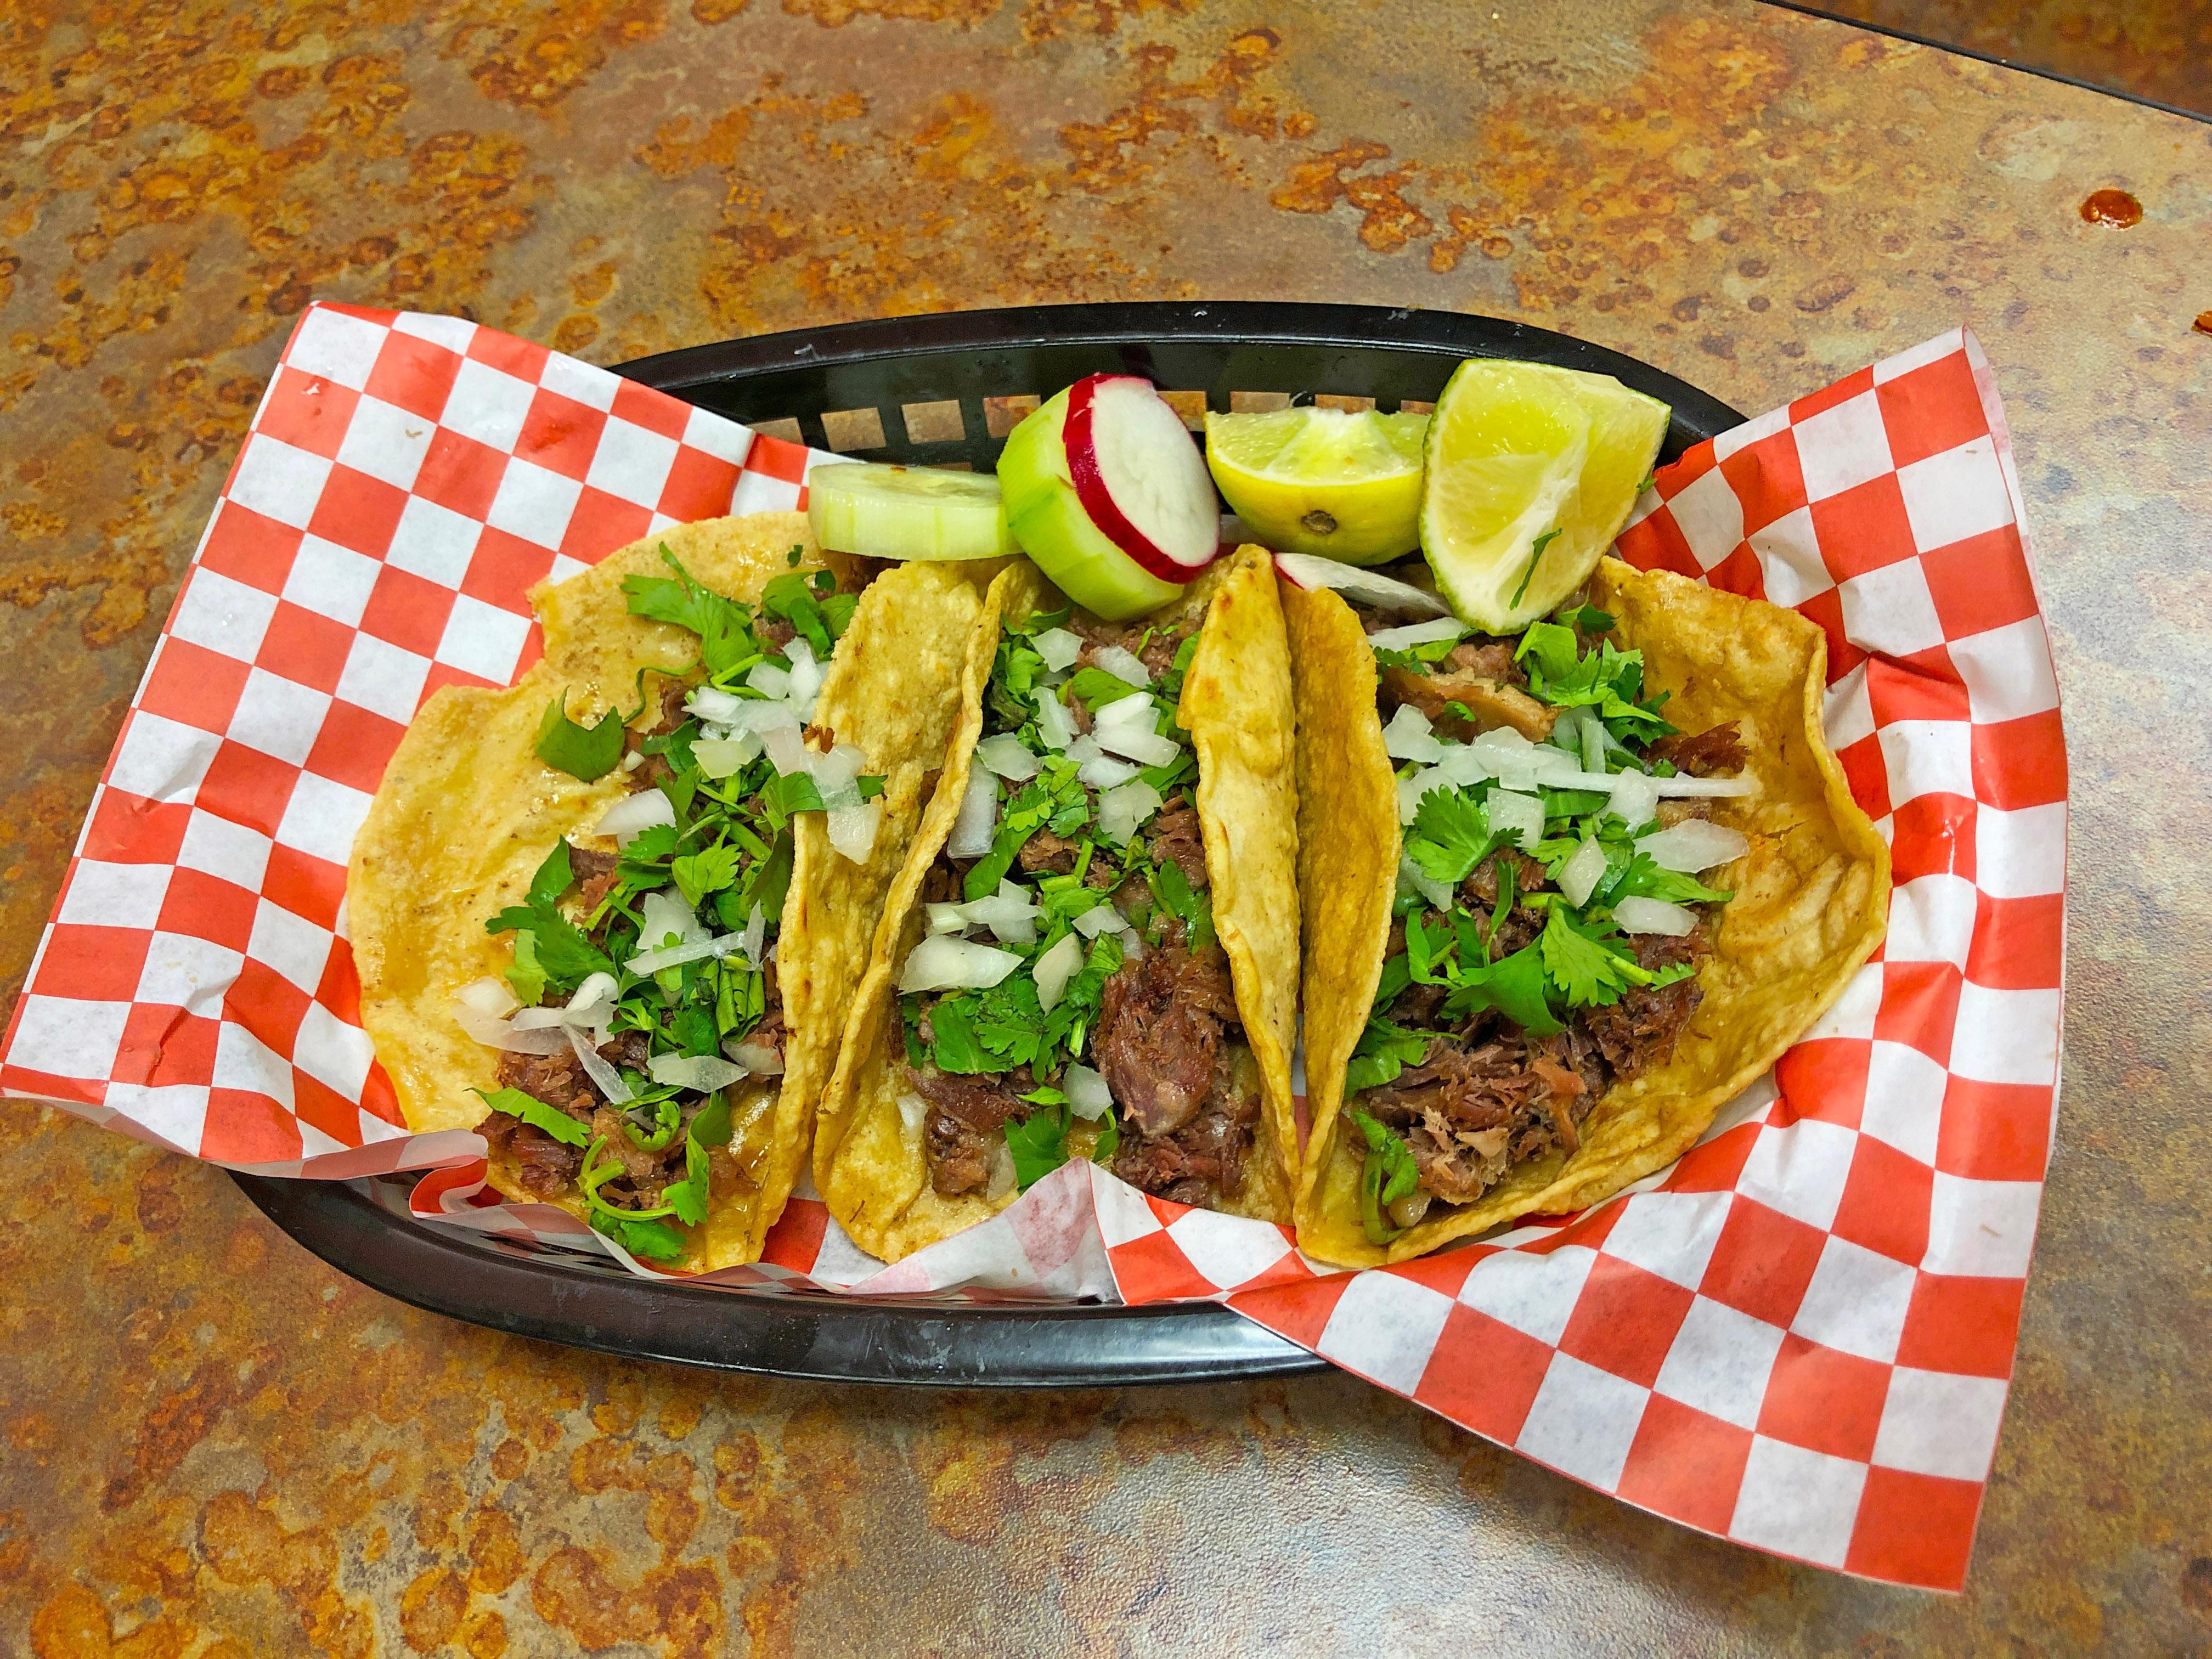 HandMade Tacos (3tacos)